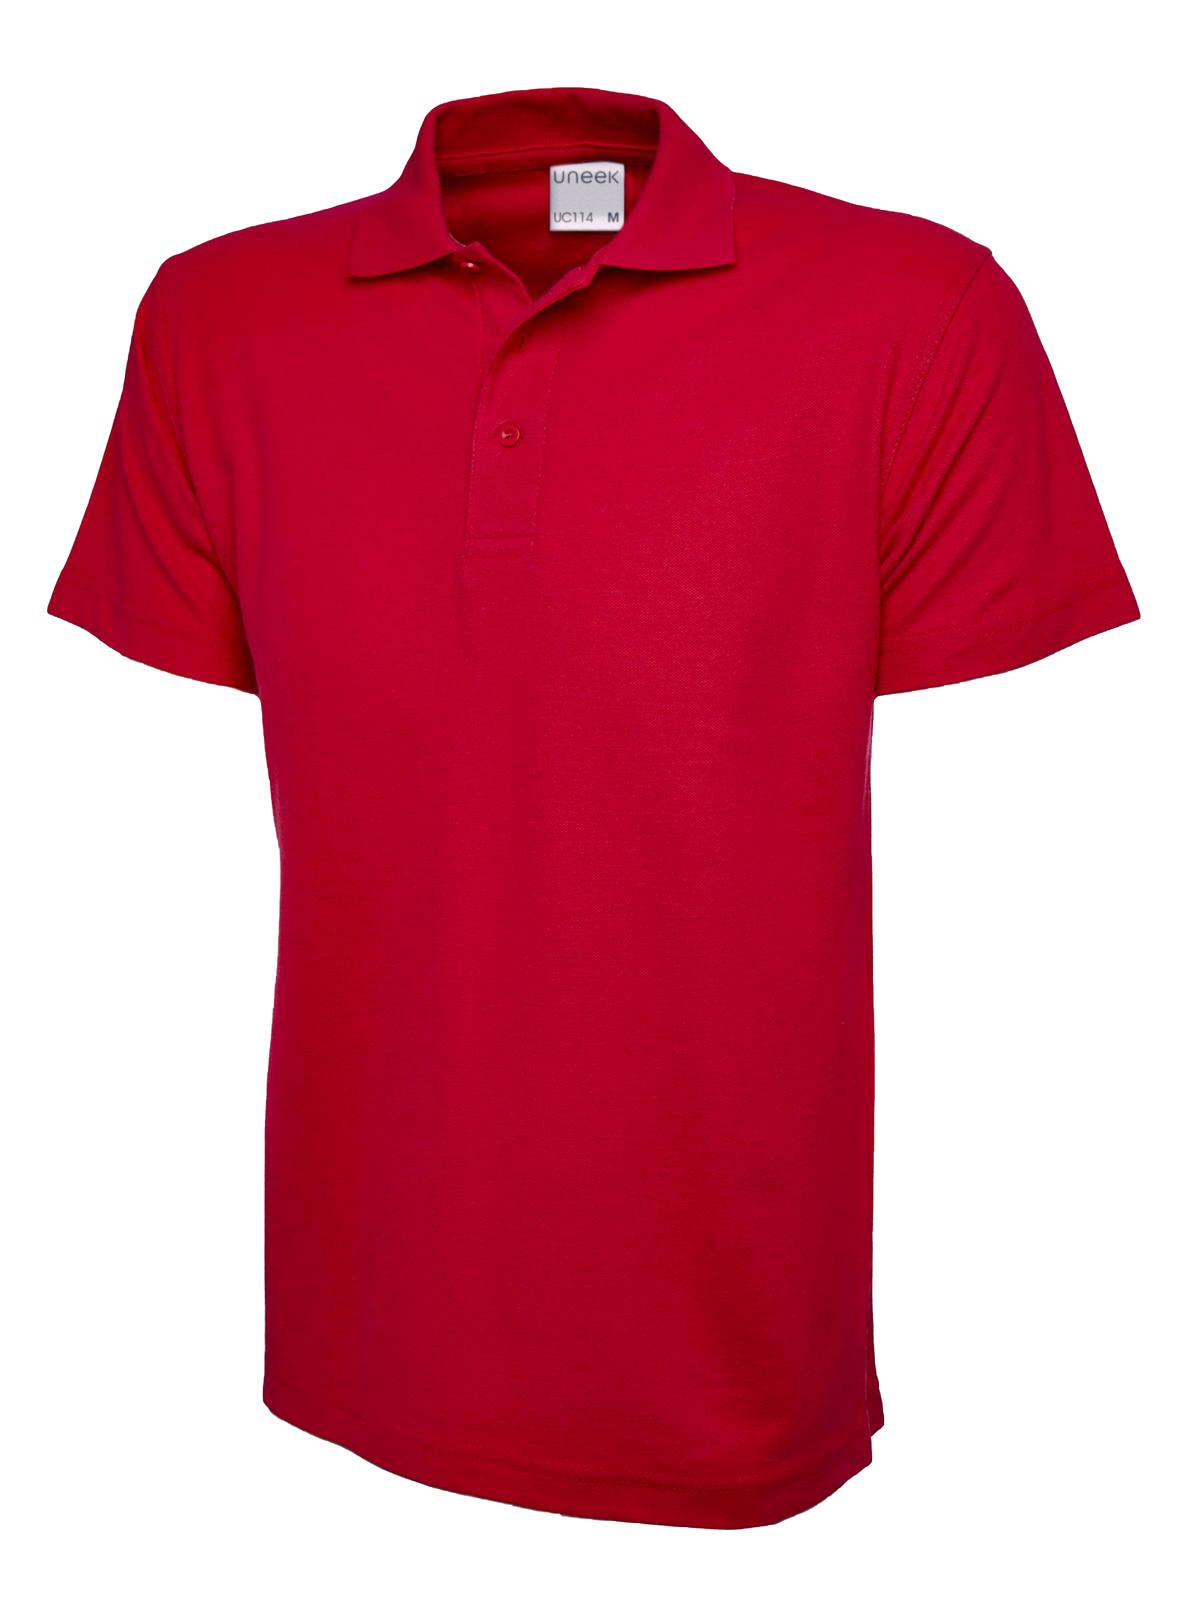 Uneek Men's Ultra Cotton Poloshirt UC114 - Red